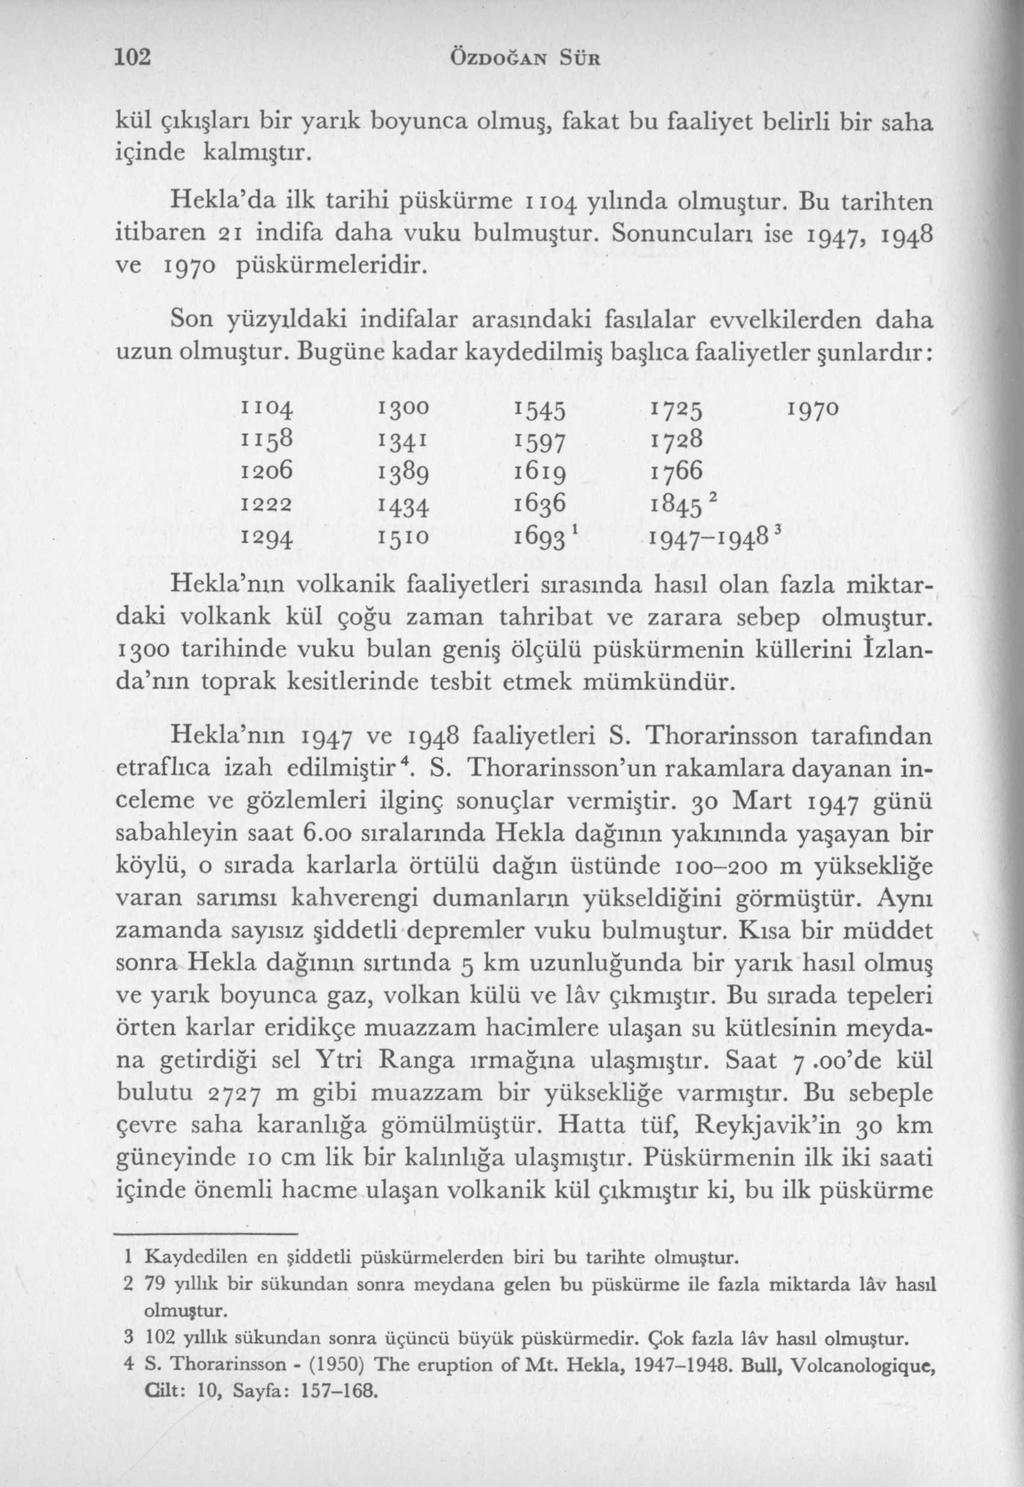 102 Ö z d o ğ a n S ür kül çıkışları bir yarık boyunca olmuş, fakat bu faaliyet belirli bir saha içinde kalmıştır. Hekla da ilk tarihi püskürme 1104 yılında olmuştur.